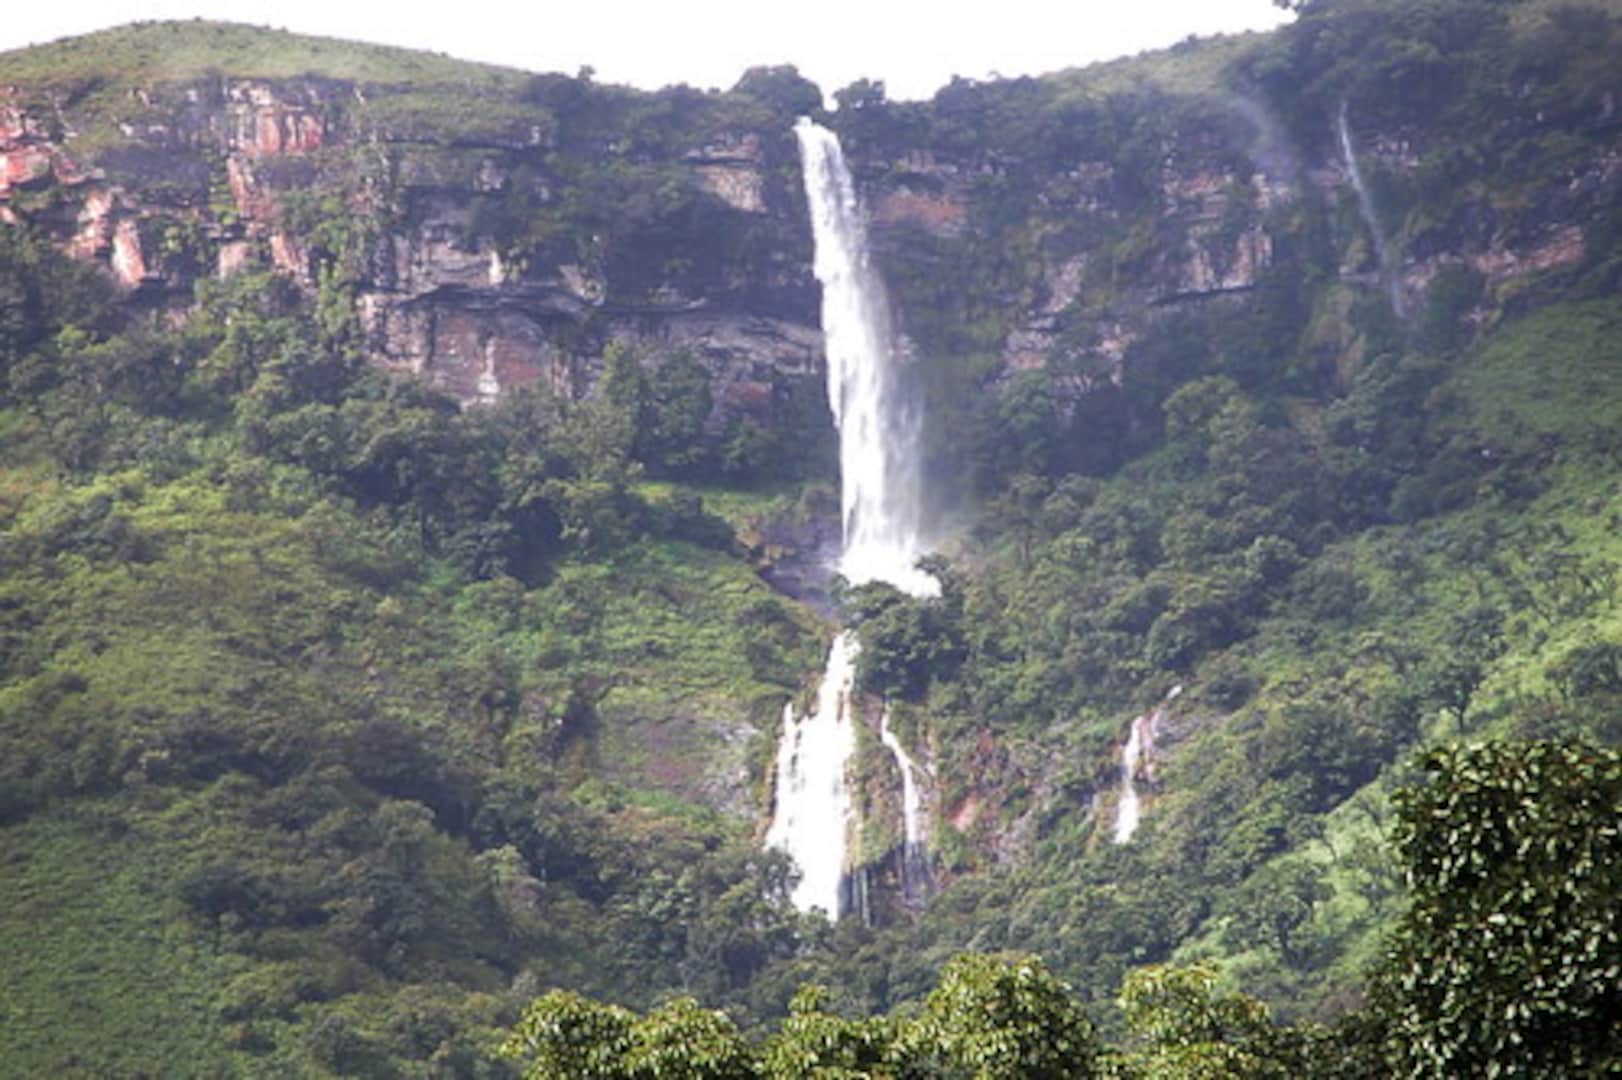 Kalhatti falls